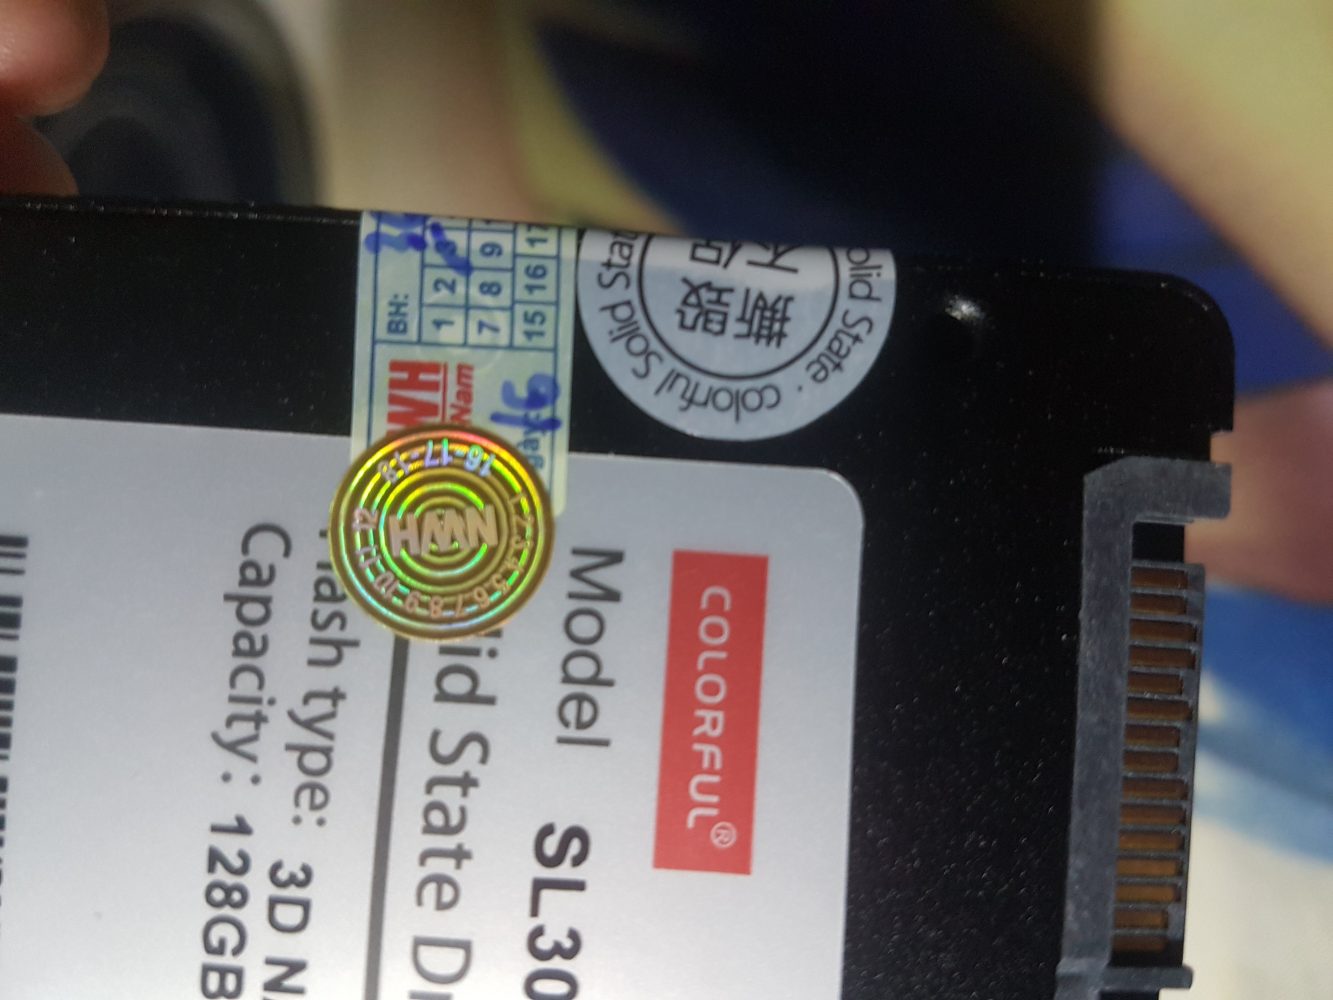 Đánh giá SSD Colorful SL300 128GB, có thực Ngon – Bổ – Rẻ?